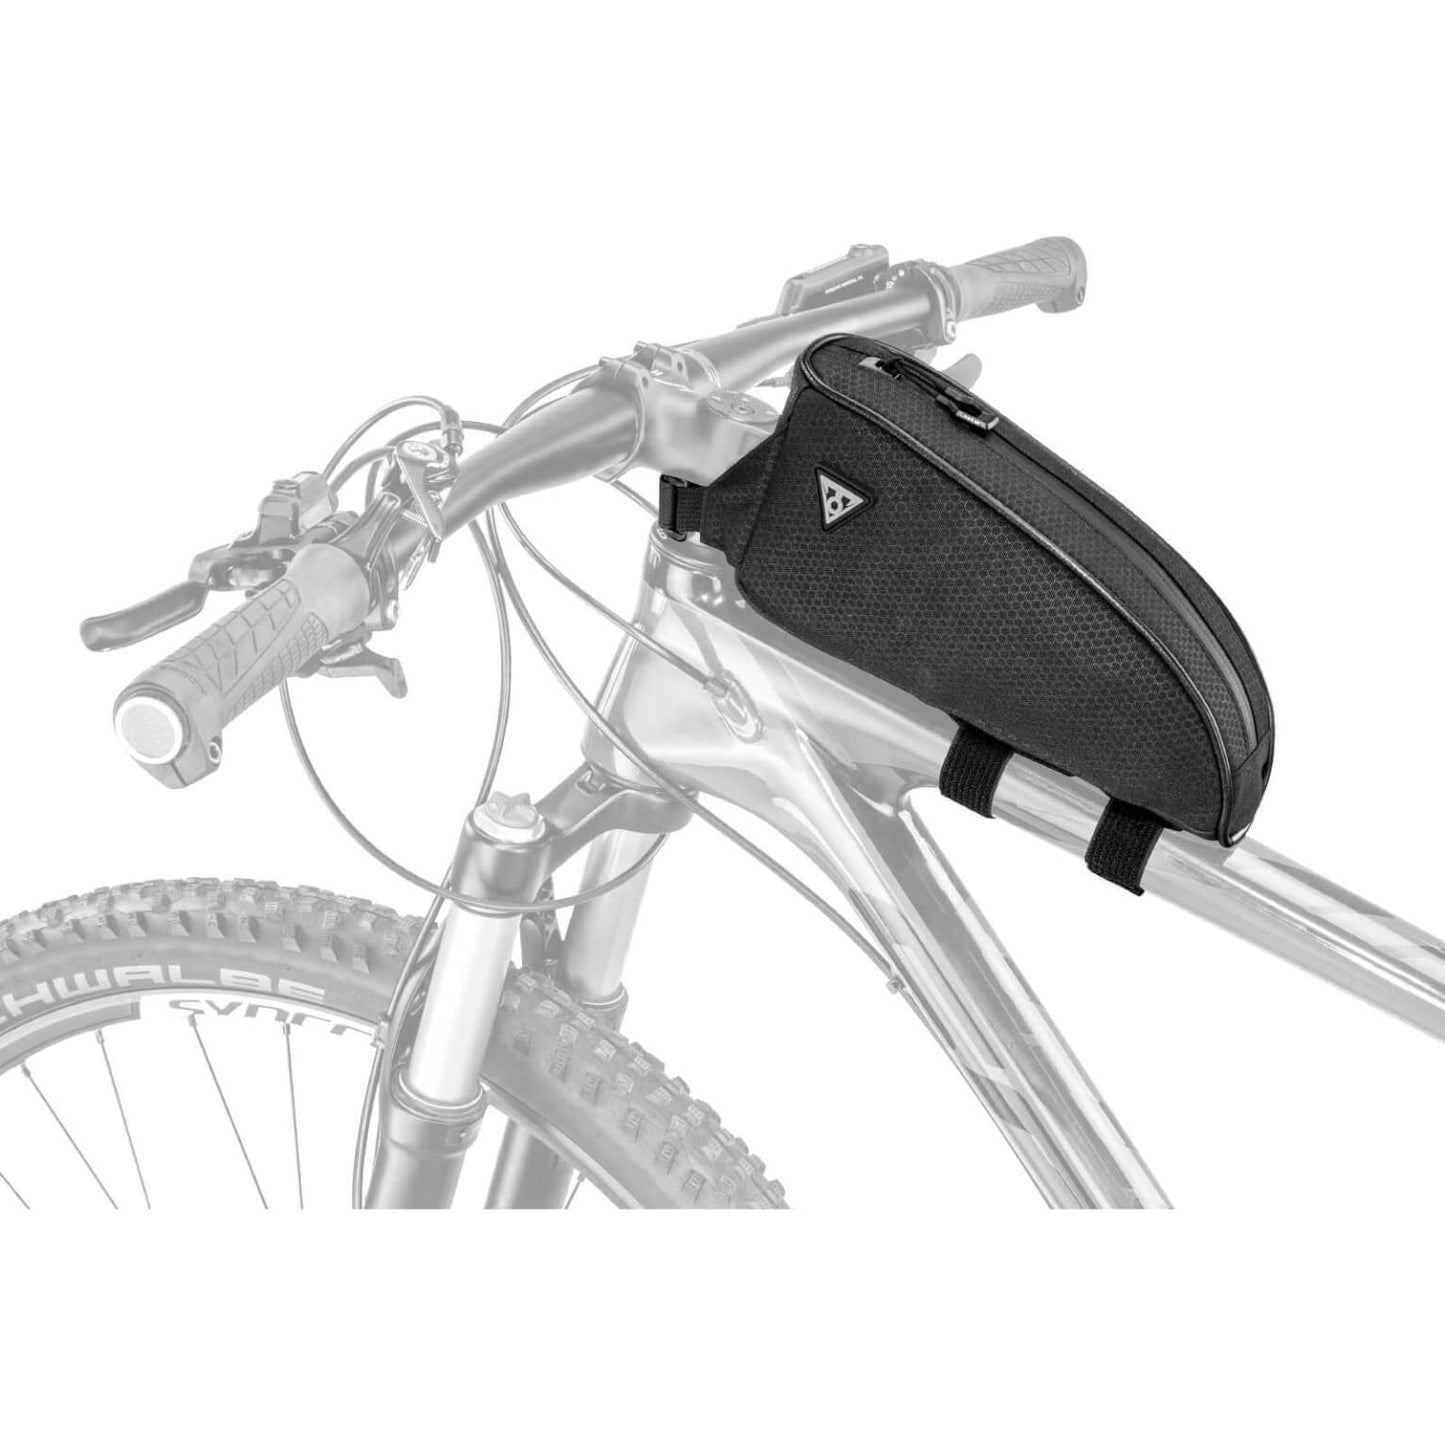 Frametas topoak toploader nero - borsa per biciclette - unisex - imballaggio per biciclette